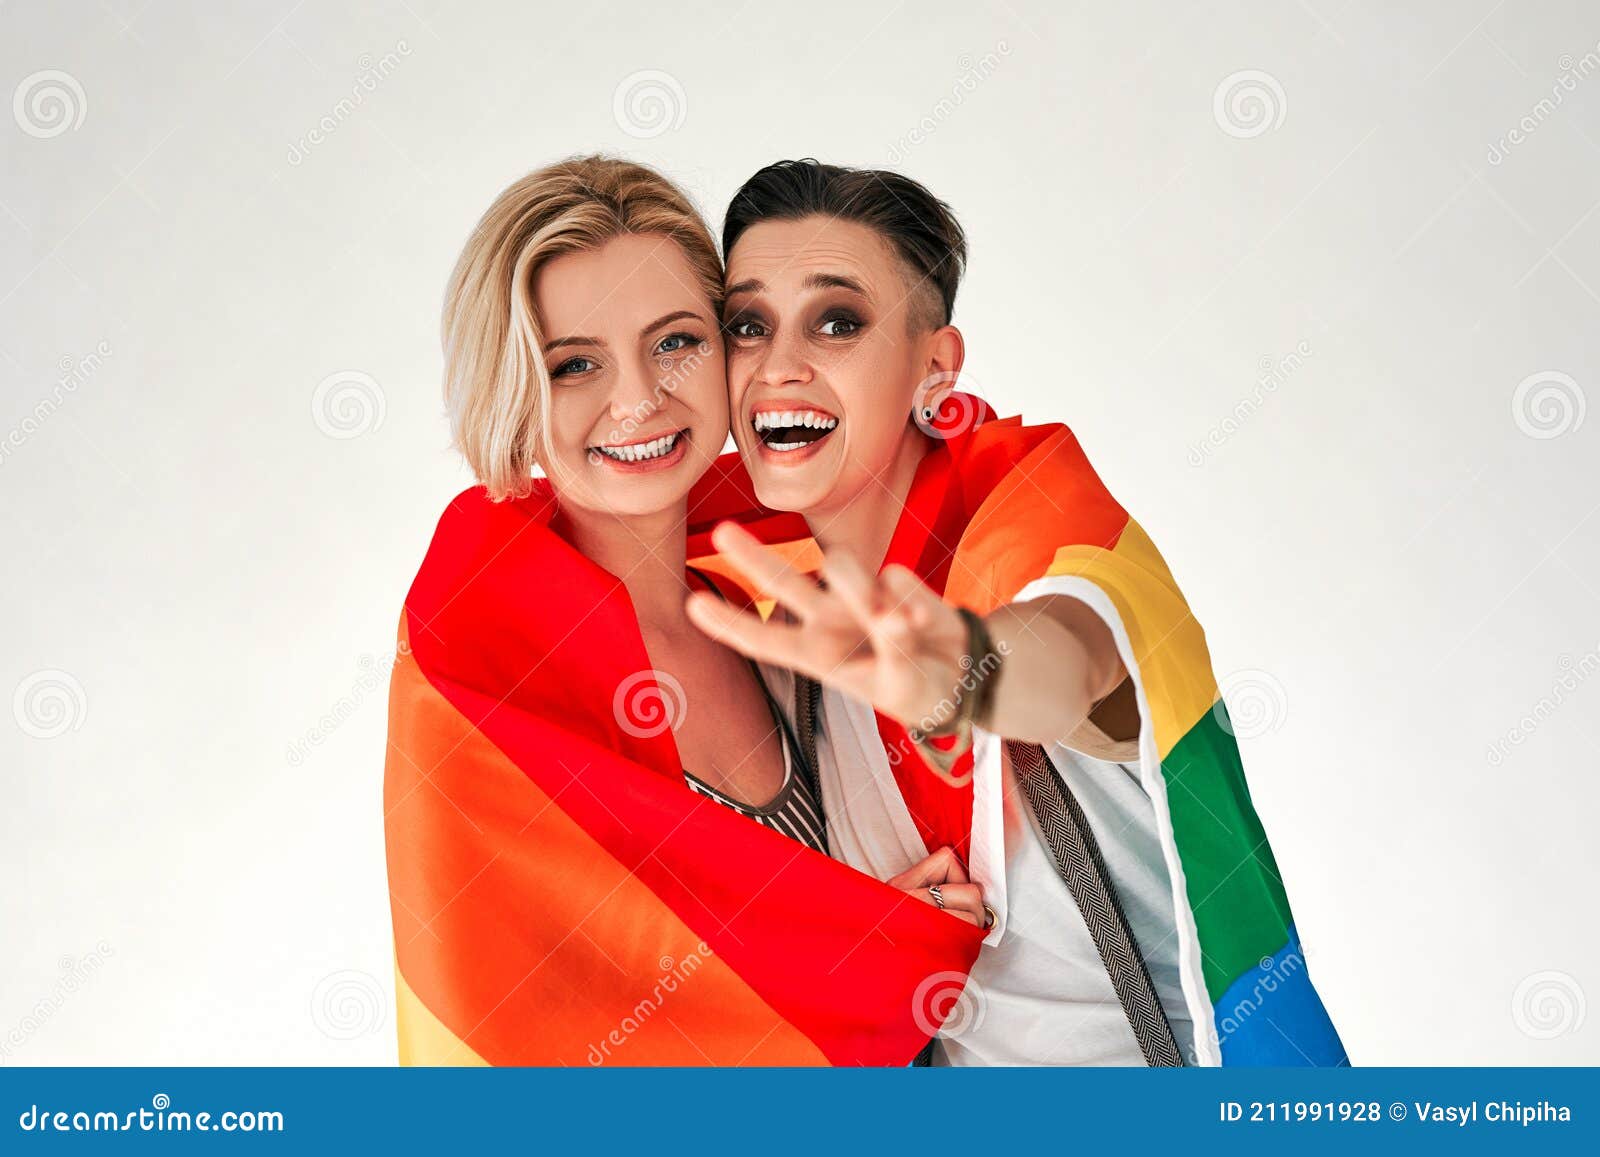 ہم جنس پرستوں کی ڈیٹنگ ایپس۔